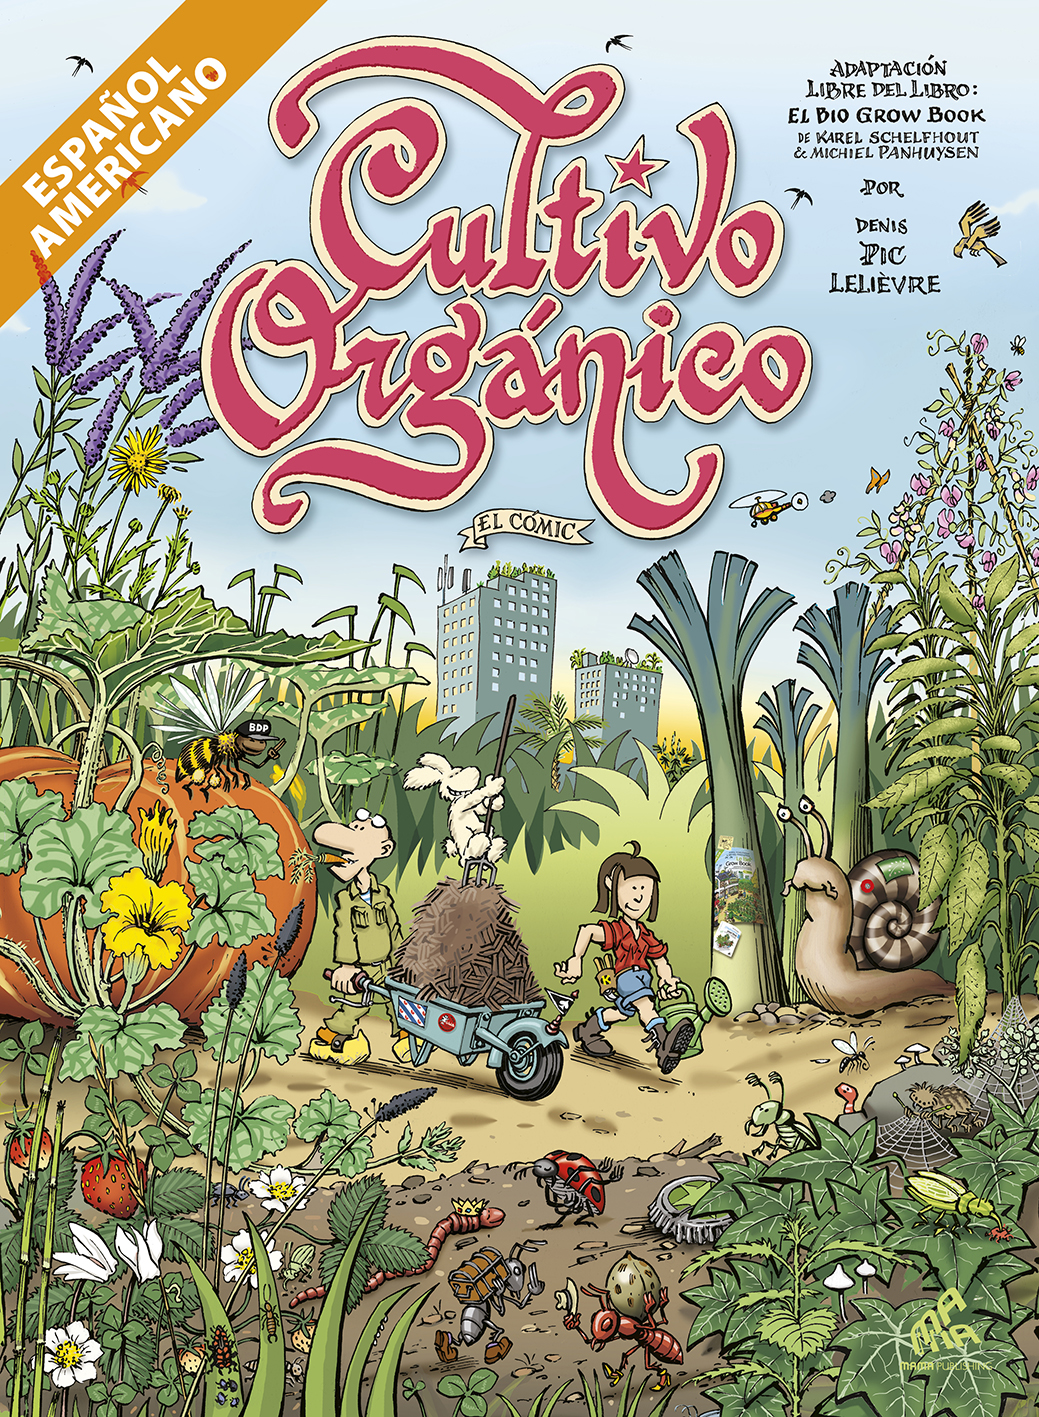 Cultivo orgánico, el cómic - Edición Latinoamérica